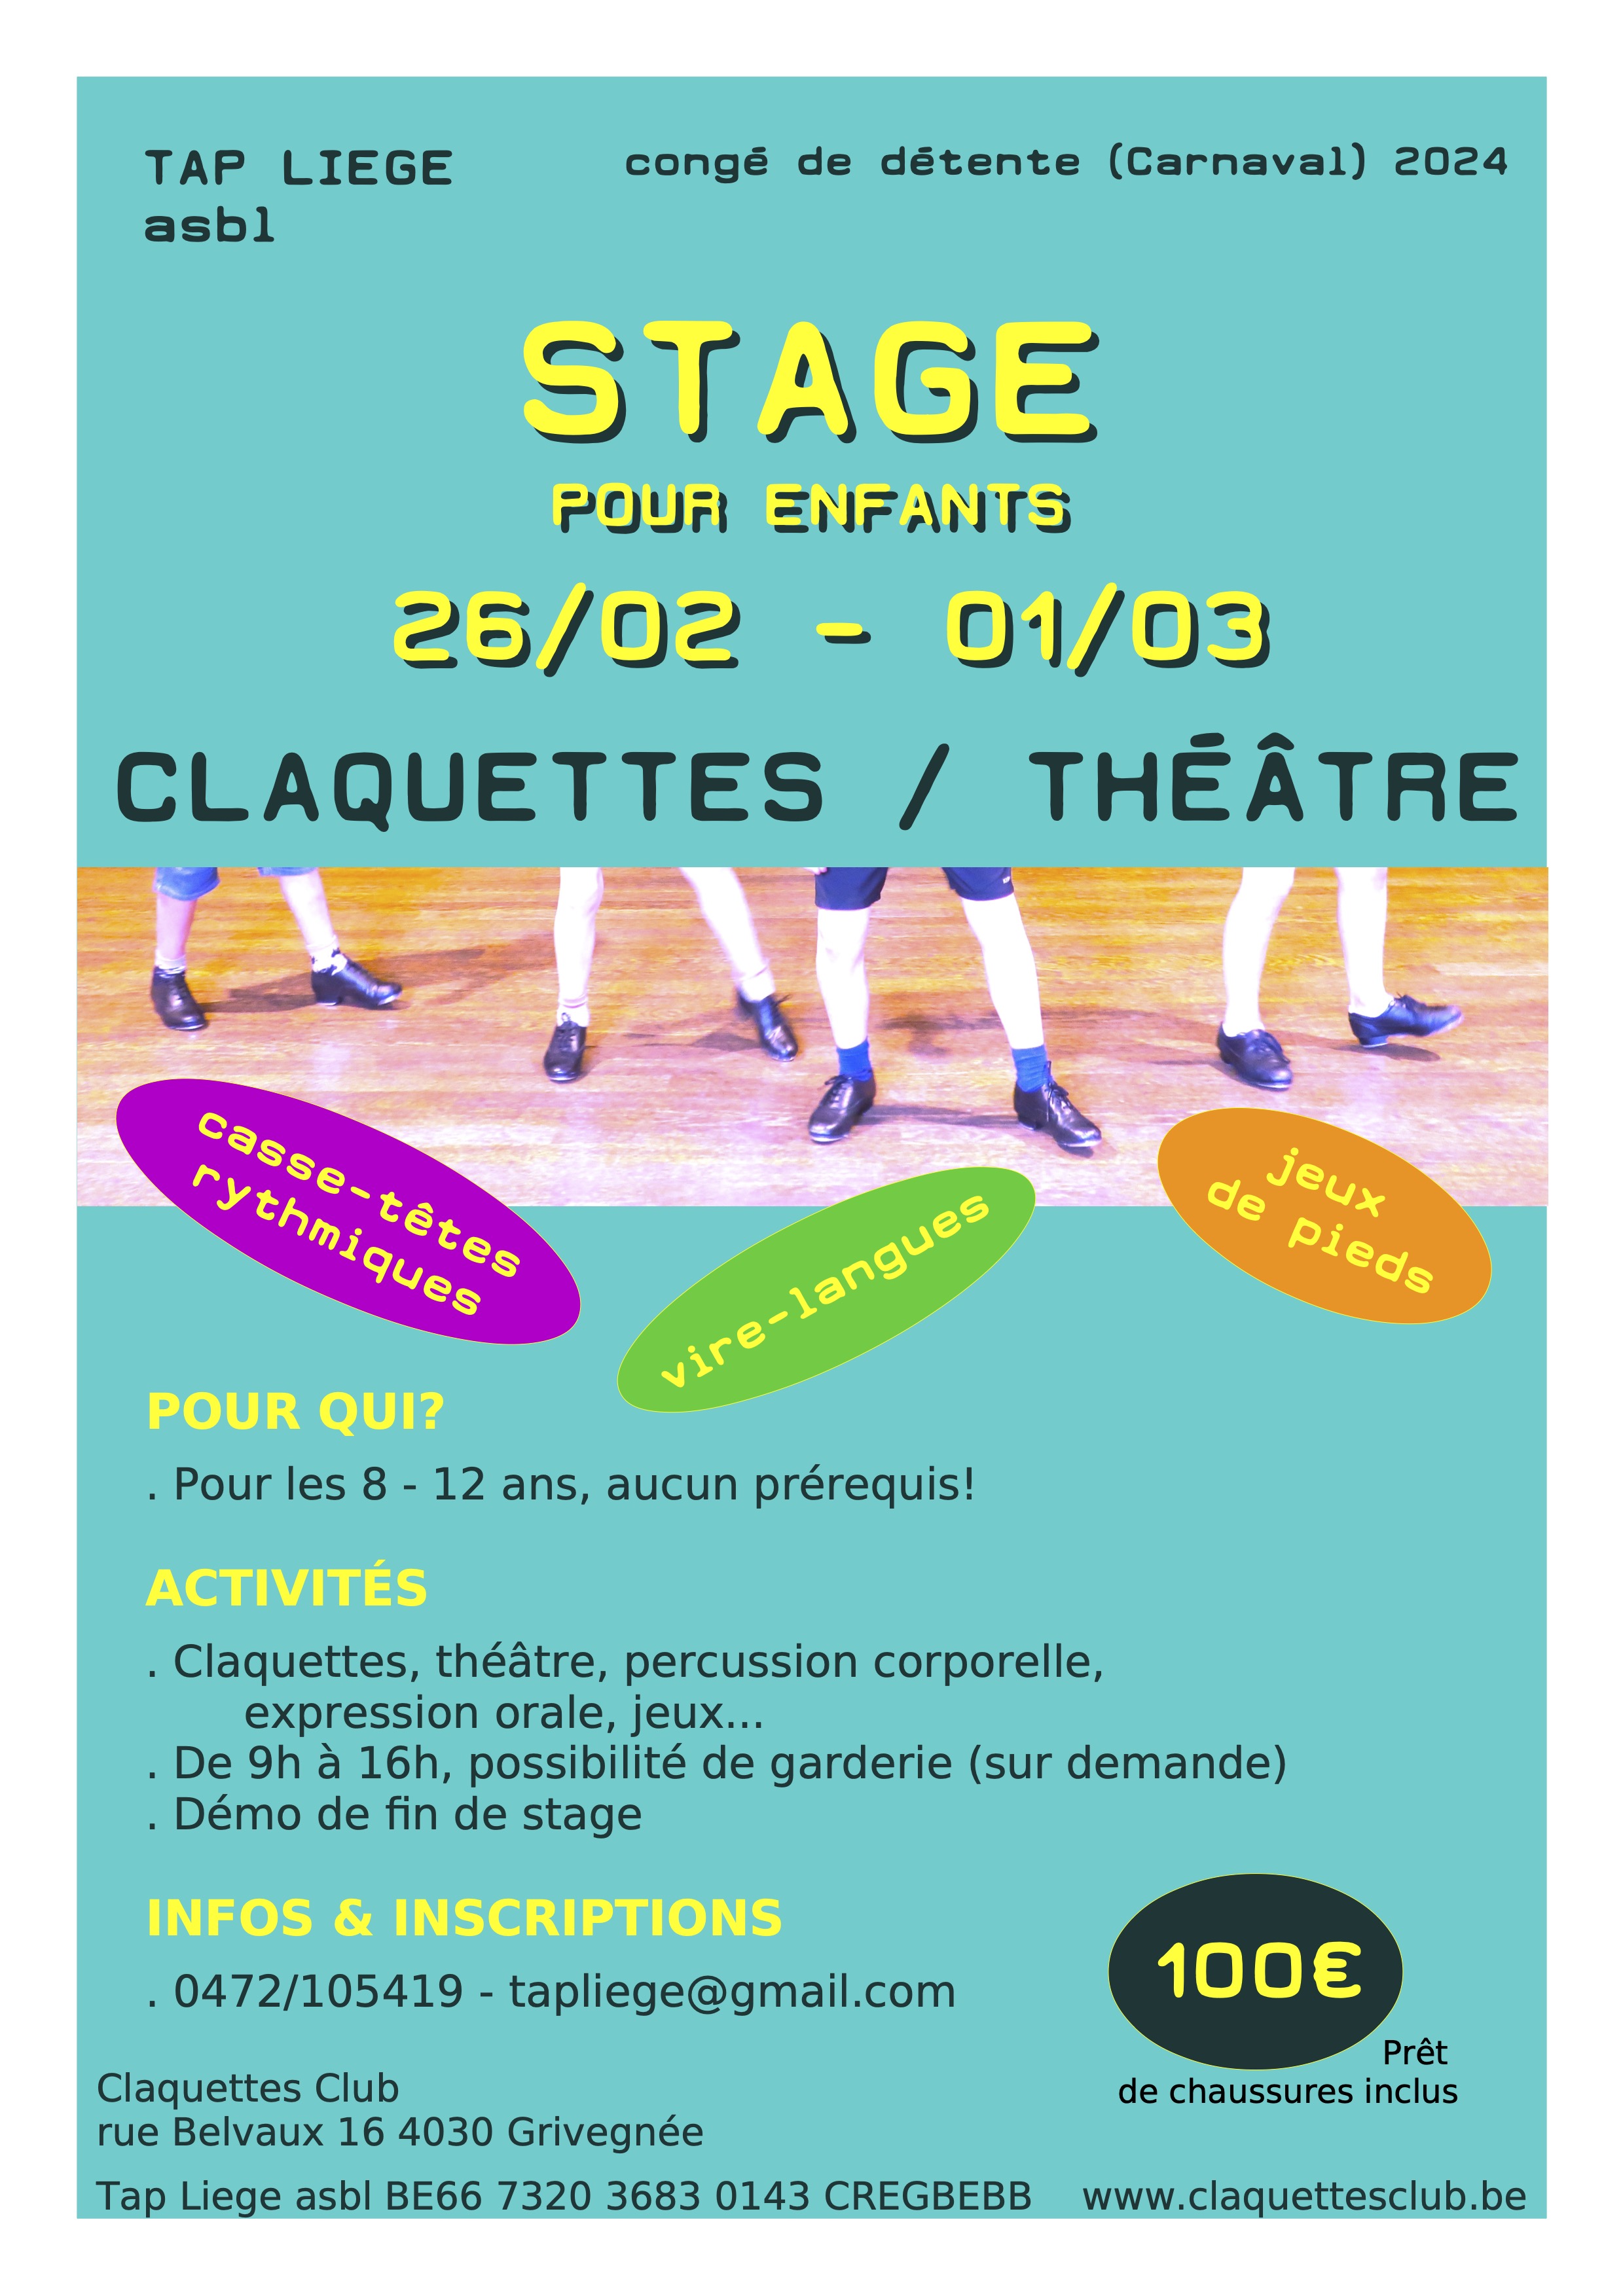 Image Claquettes / Théâtre